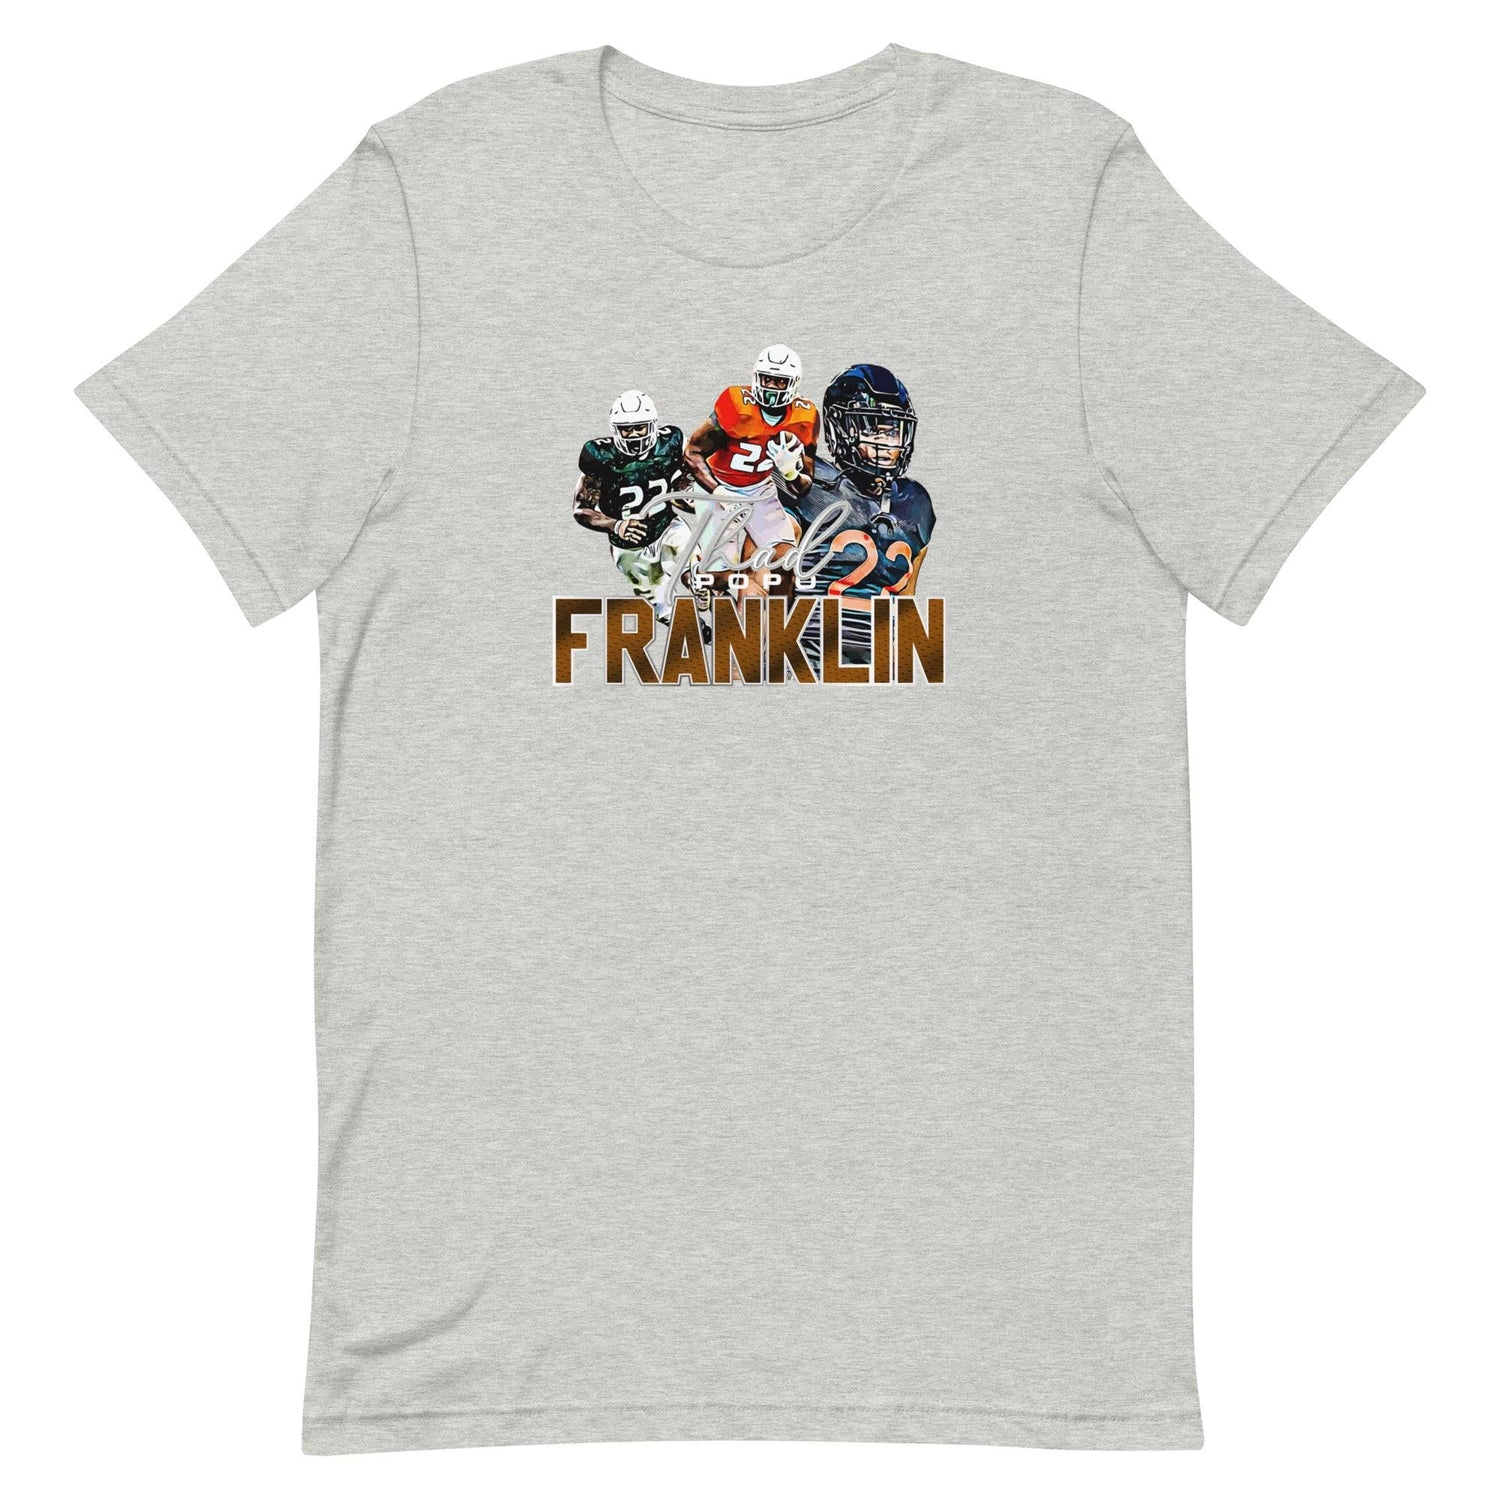 Thad Franklin "Limited Edition" t-shirt - Fan Arch